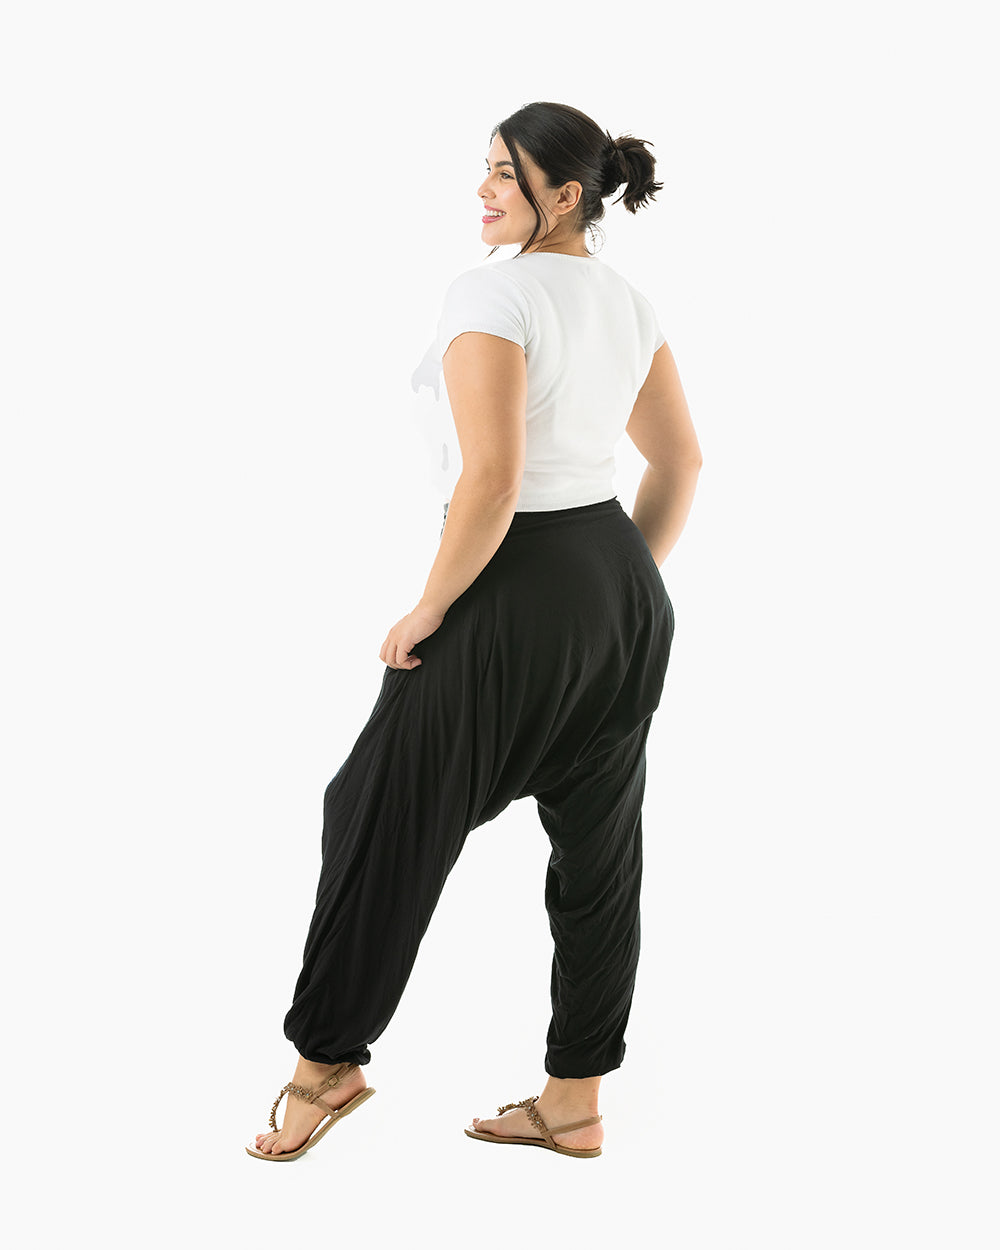 Back Harem pants for yoga